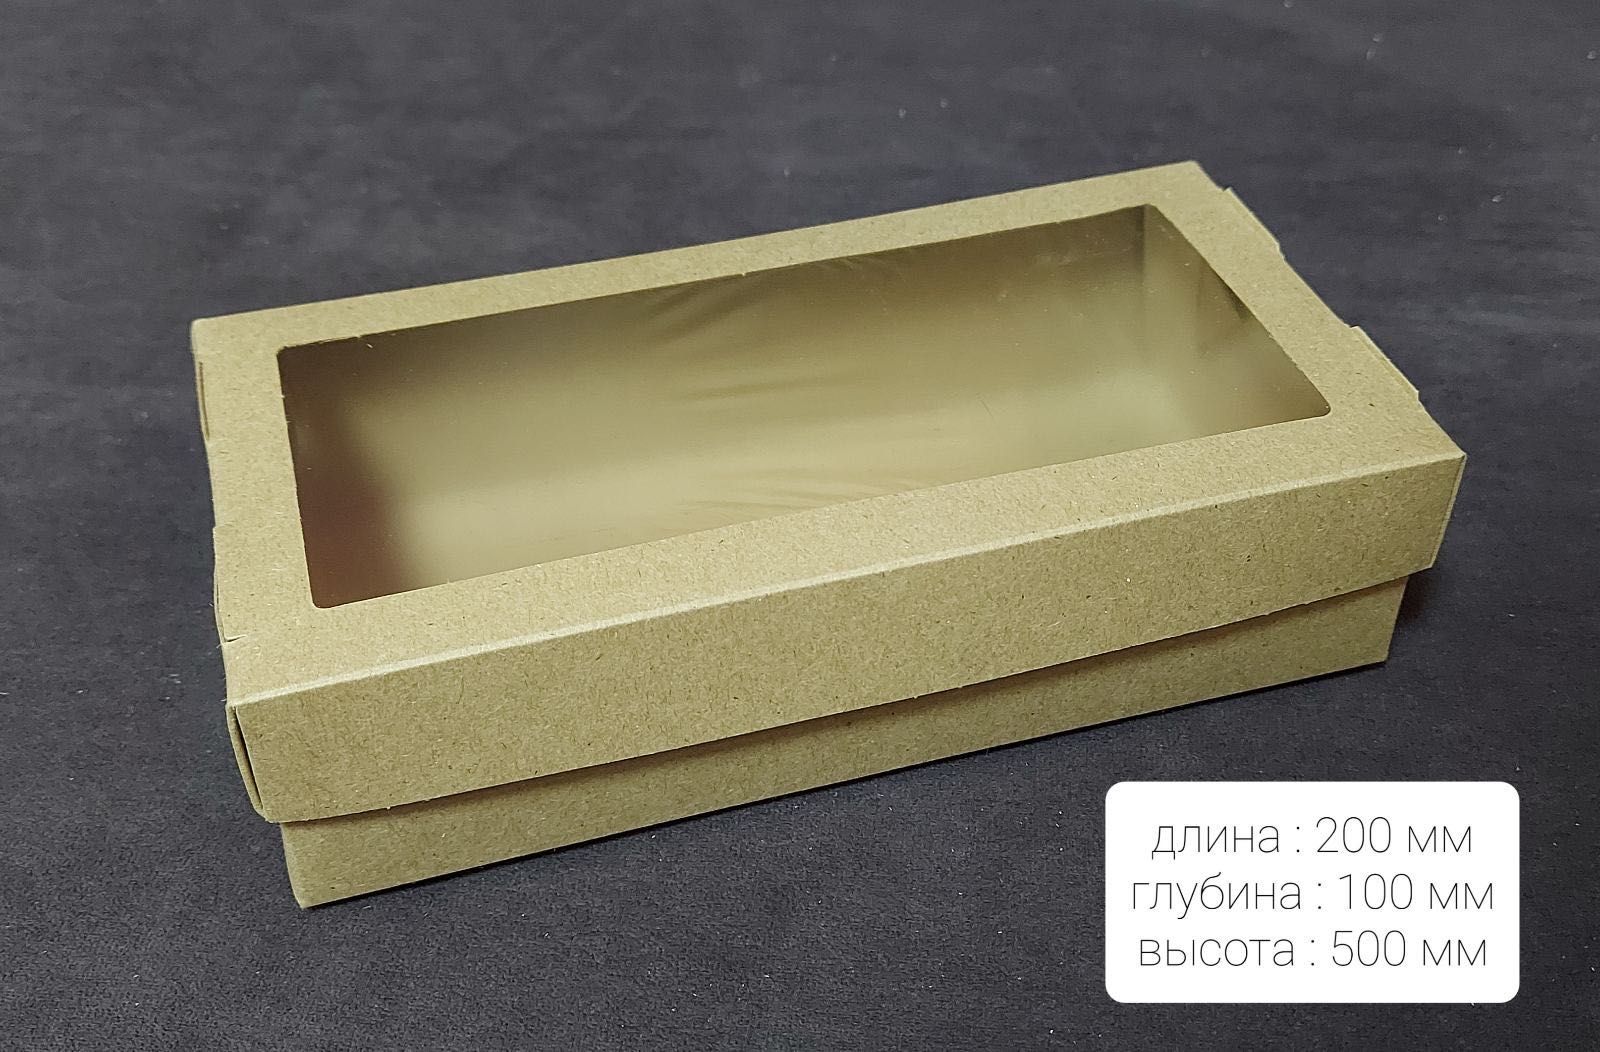 Коробка "Food box" для суши сетов или кондитерских изделий.